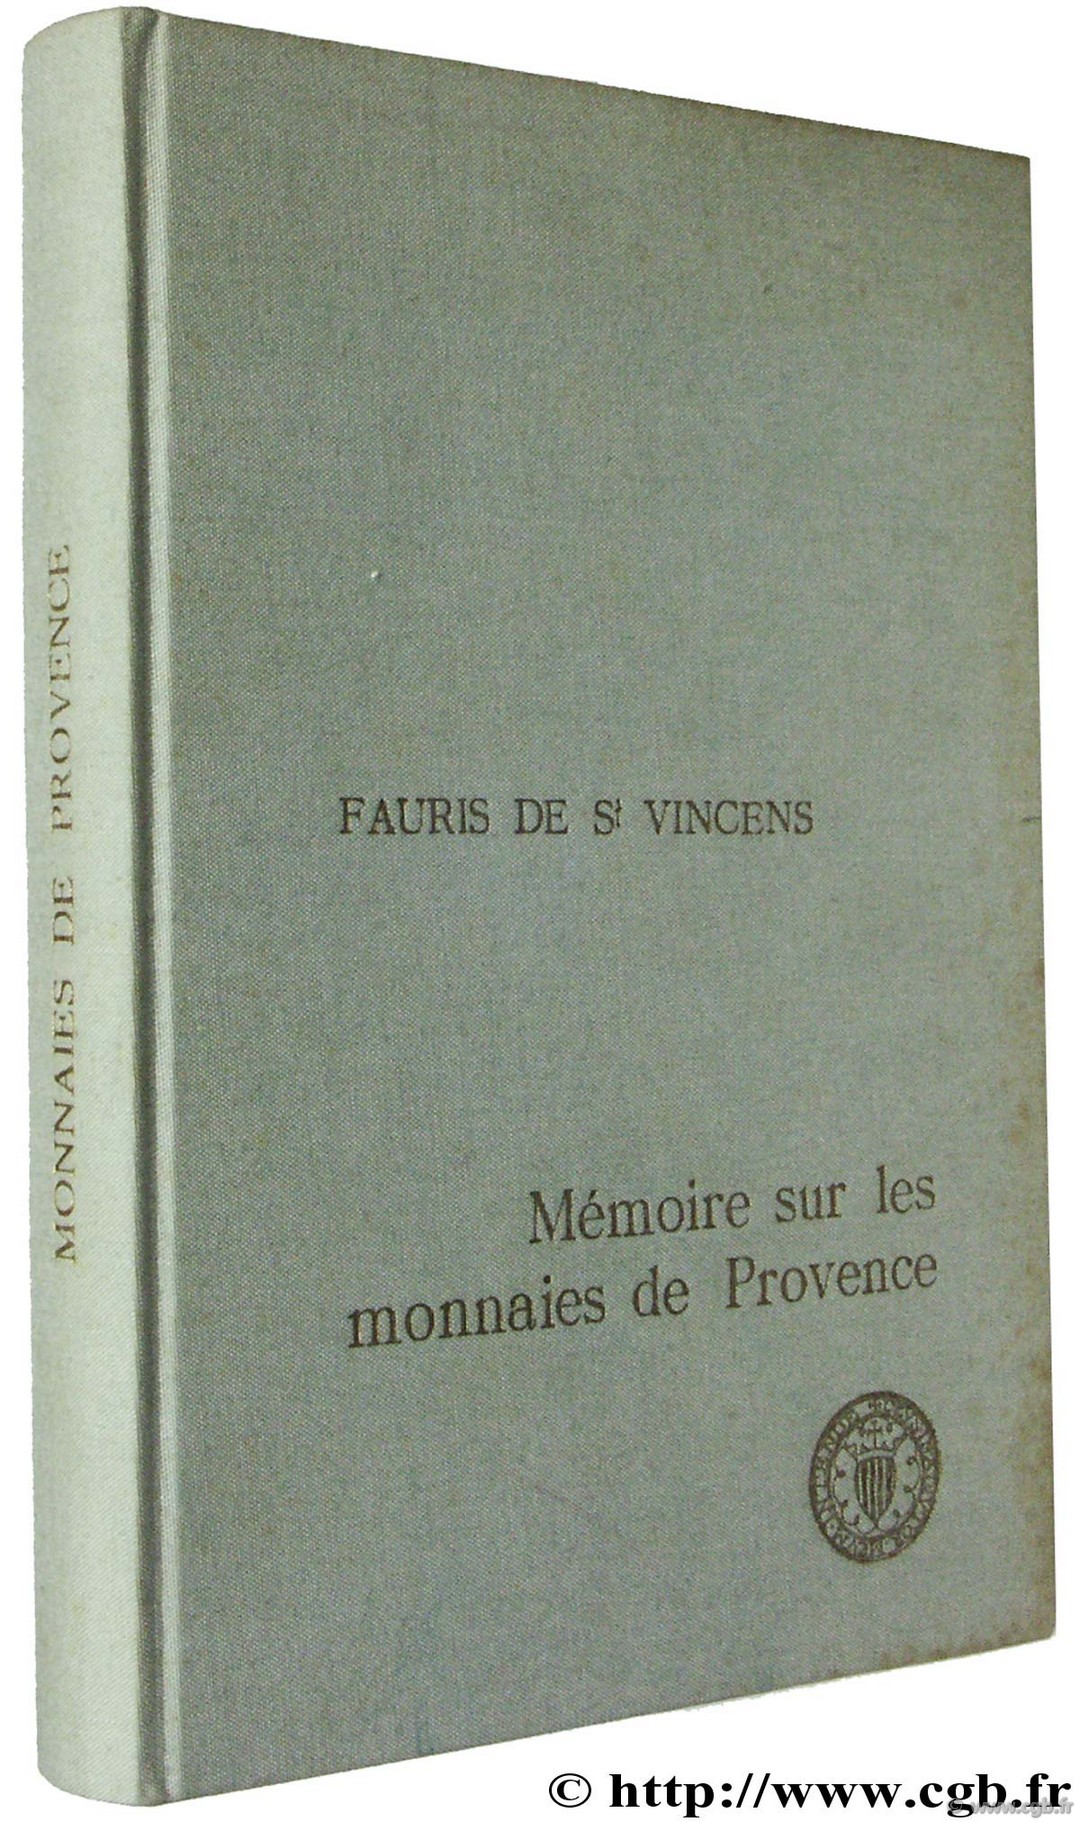 Mémoire sur les monnaies de Provence FAURIS DE SAINT VINCENT J.